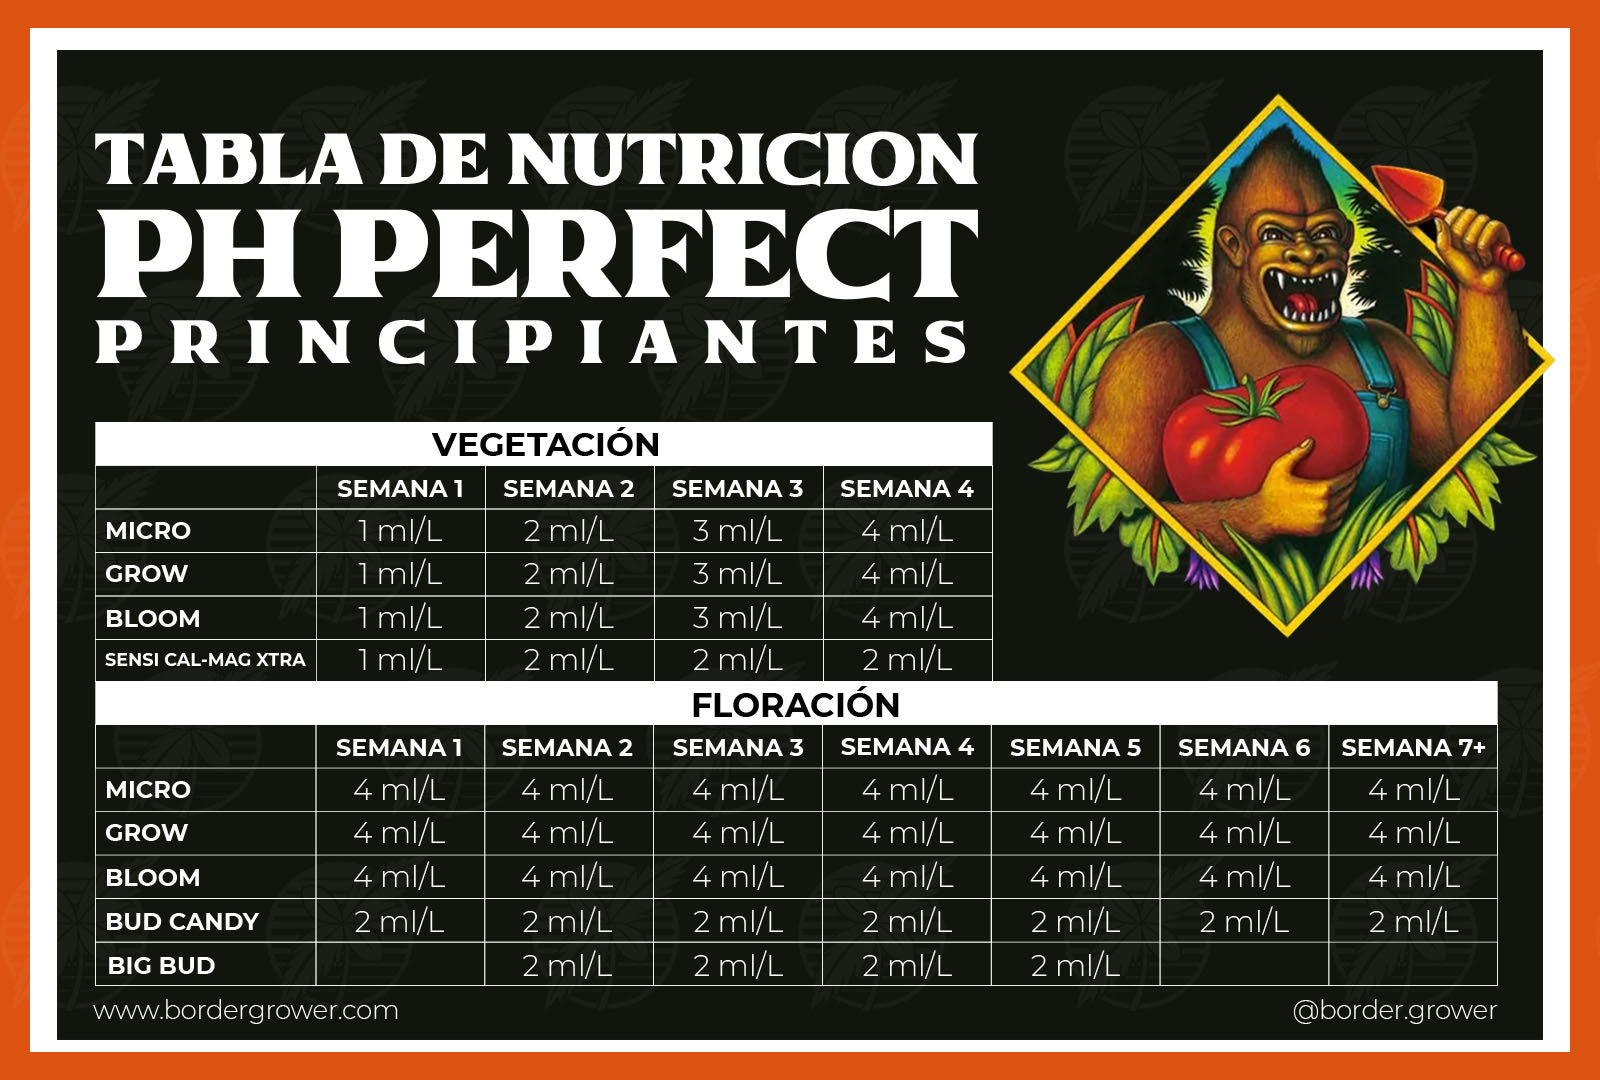 Tabla de nutricion advanced nutrients en español nivel principiante 